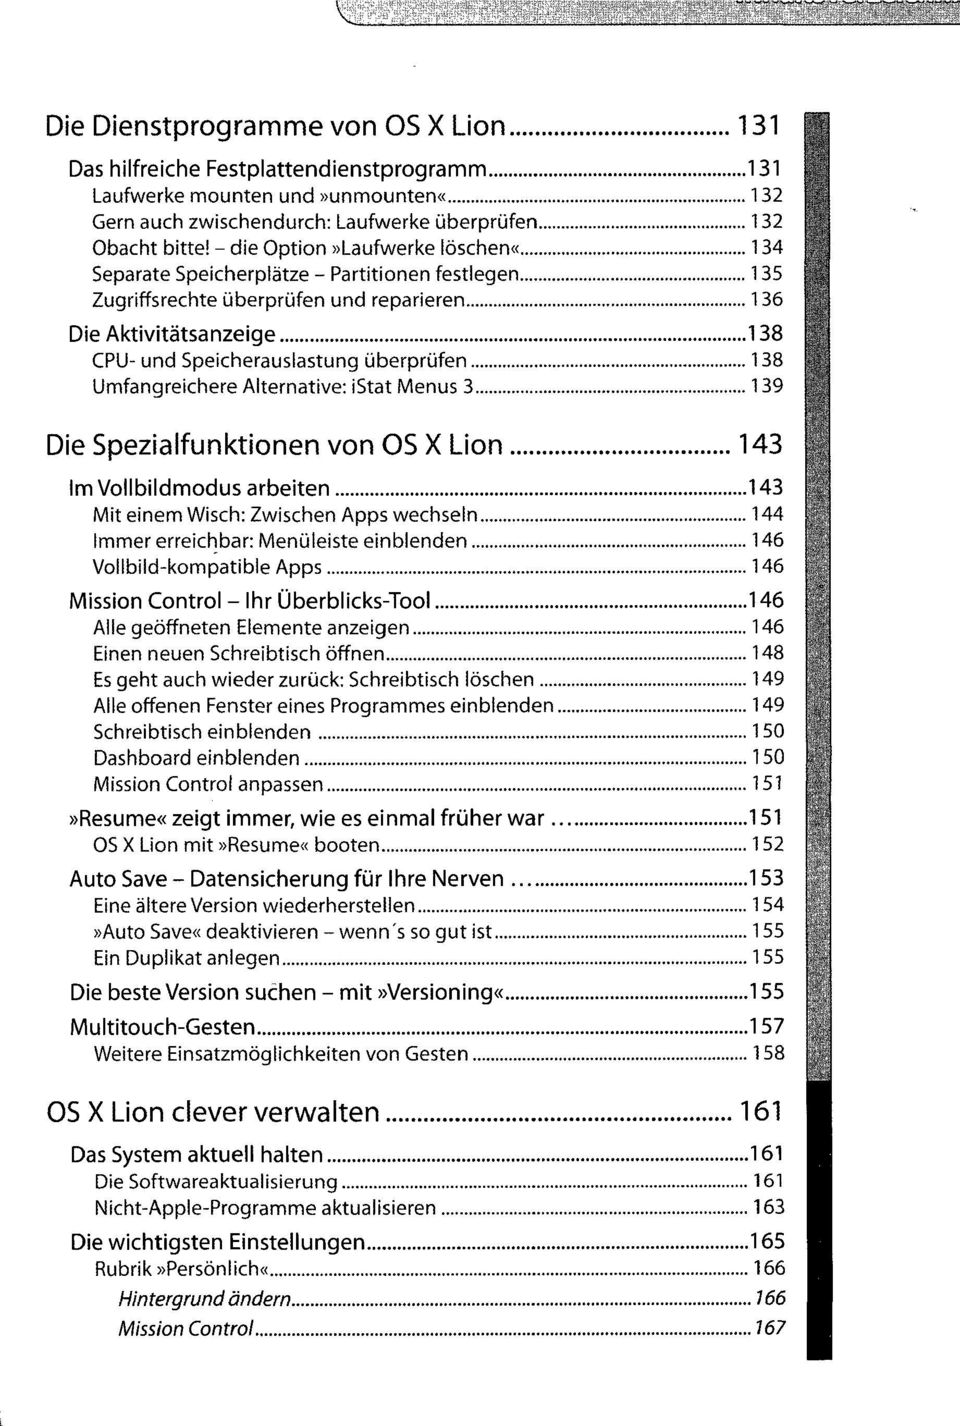 138 Umfangreichere Alternative: istat Menüs 3 139 Die Spezialfunktionen von OS X Lion 143 Im Vollbildmodus arbeiten 143 Mit einem Wisch: Zwischen Apps wechseln 144 Immer erreichbar: Menüleiste